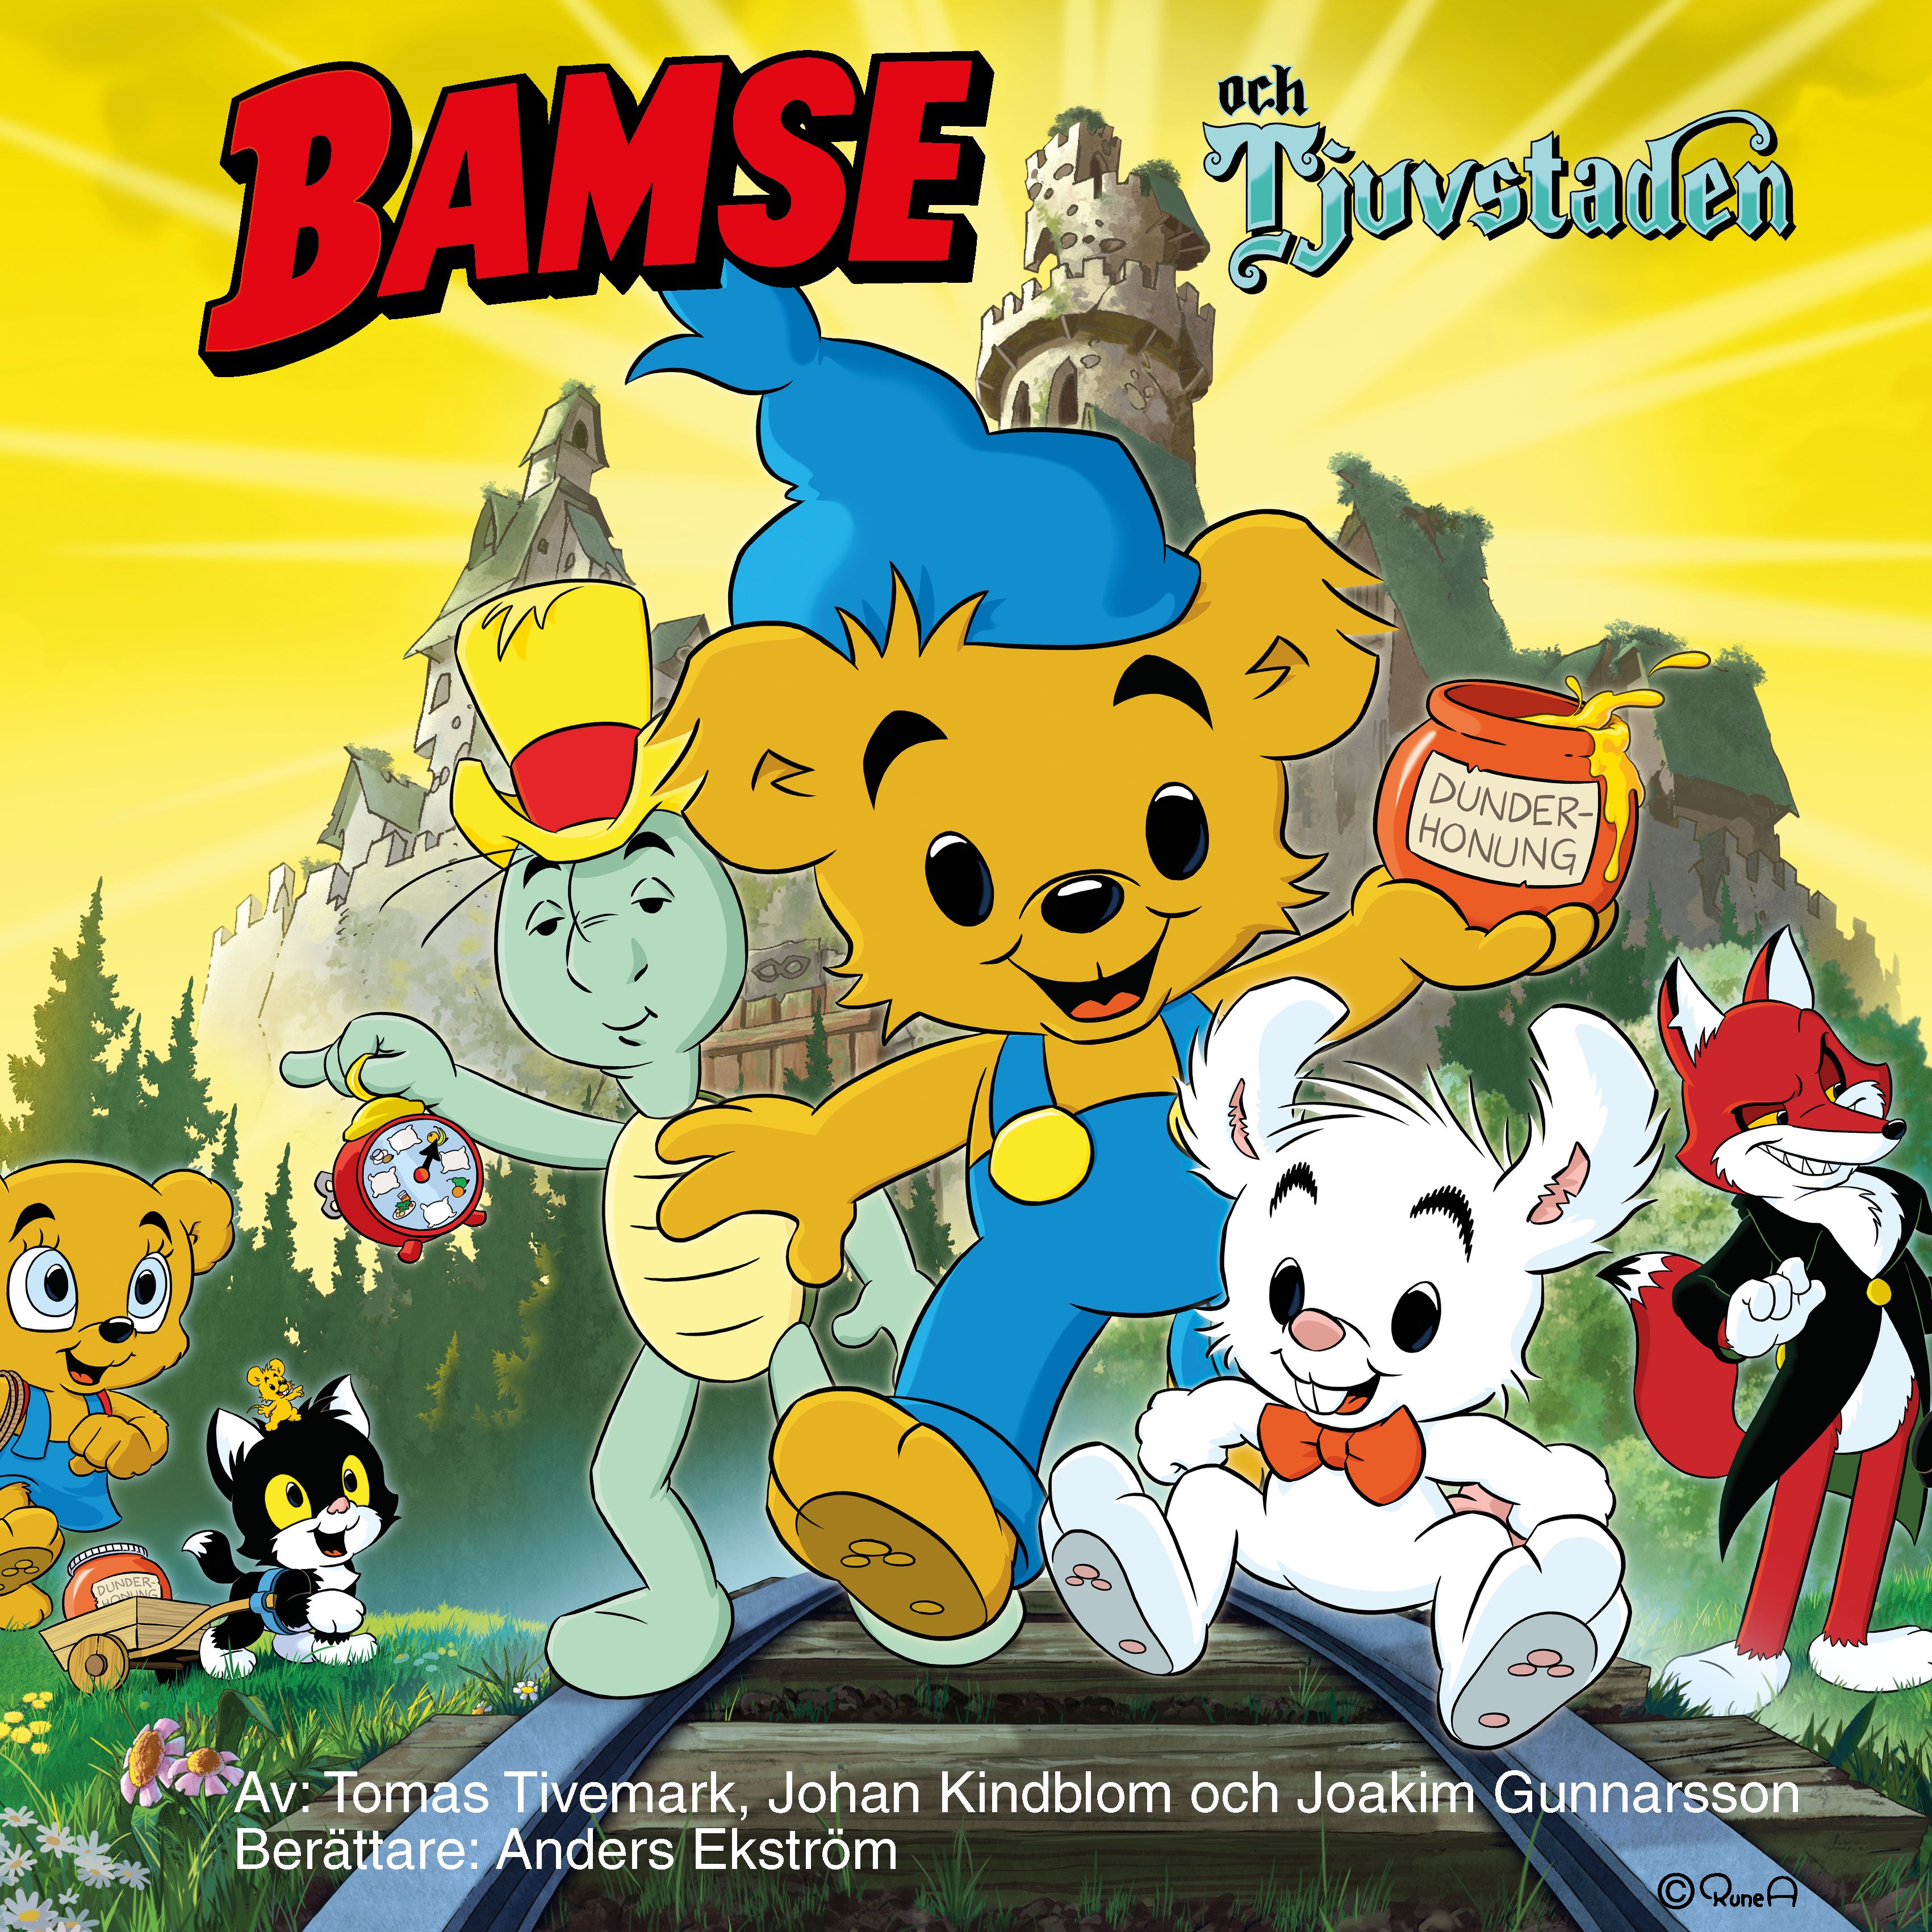 Bamse och Tjuvstaden, audiobook by Joakim Gunnarsson, Johan Kindblom, Tomas Tivemark